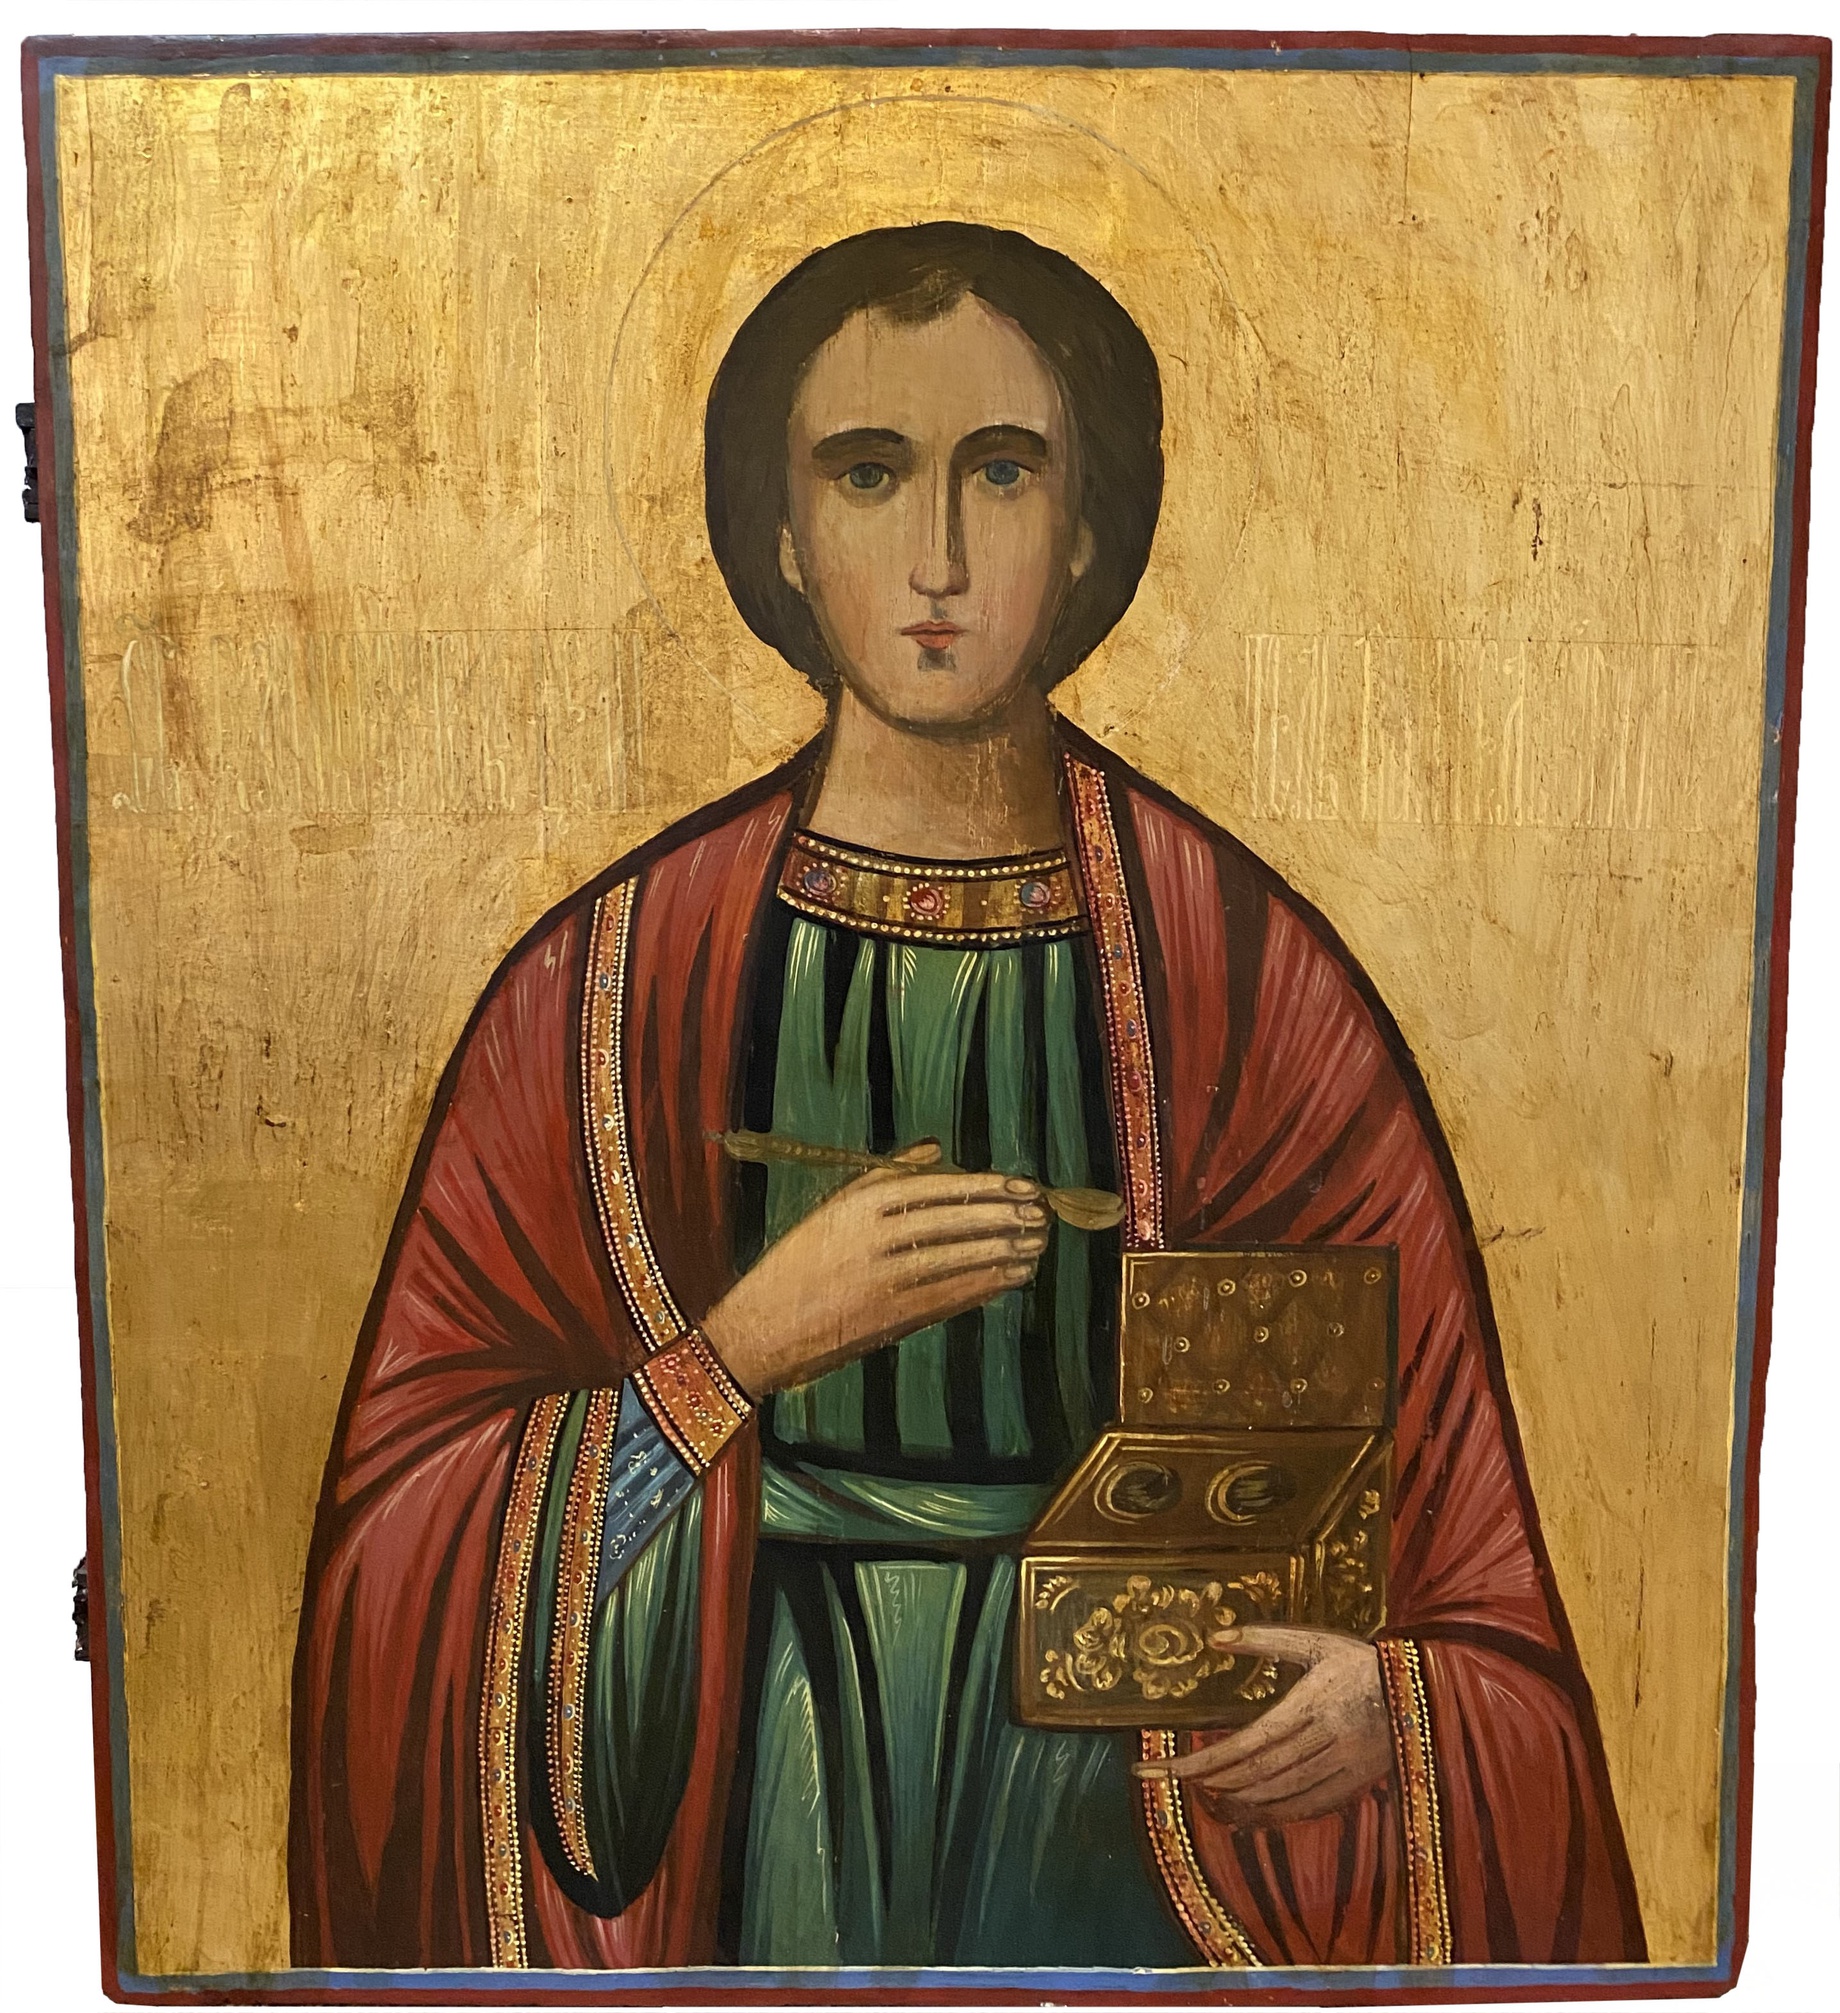 Икона святой Великомученик Целитель Пантелеймон